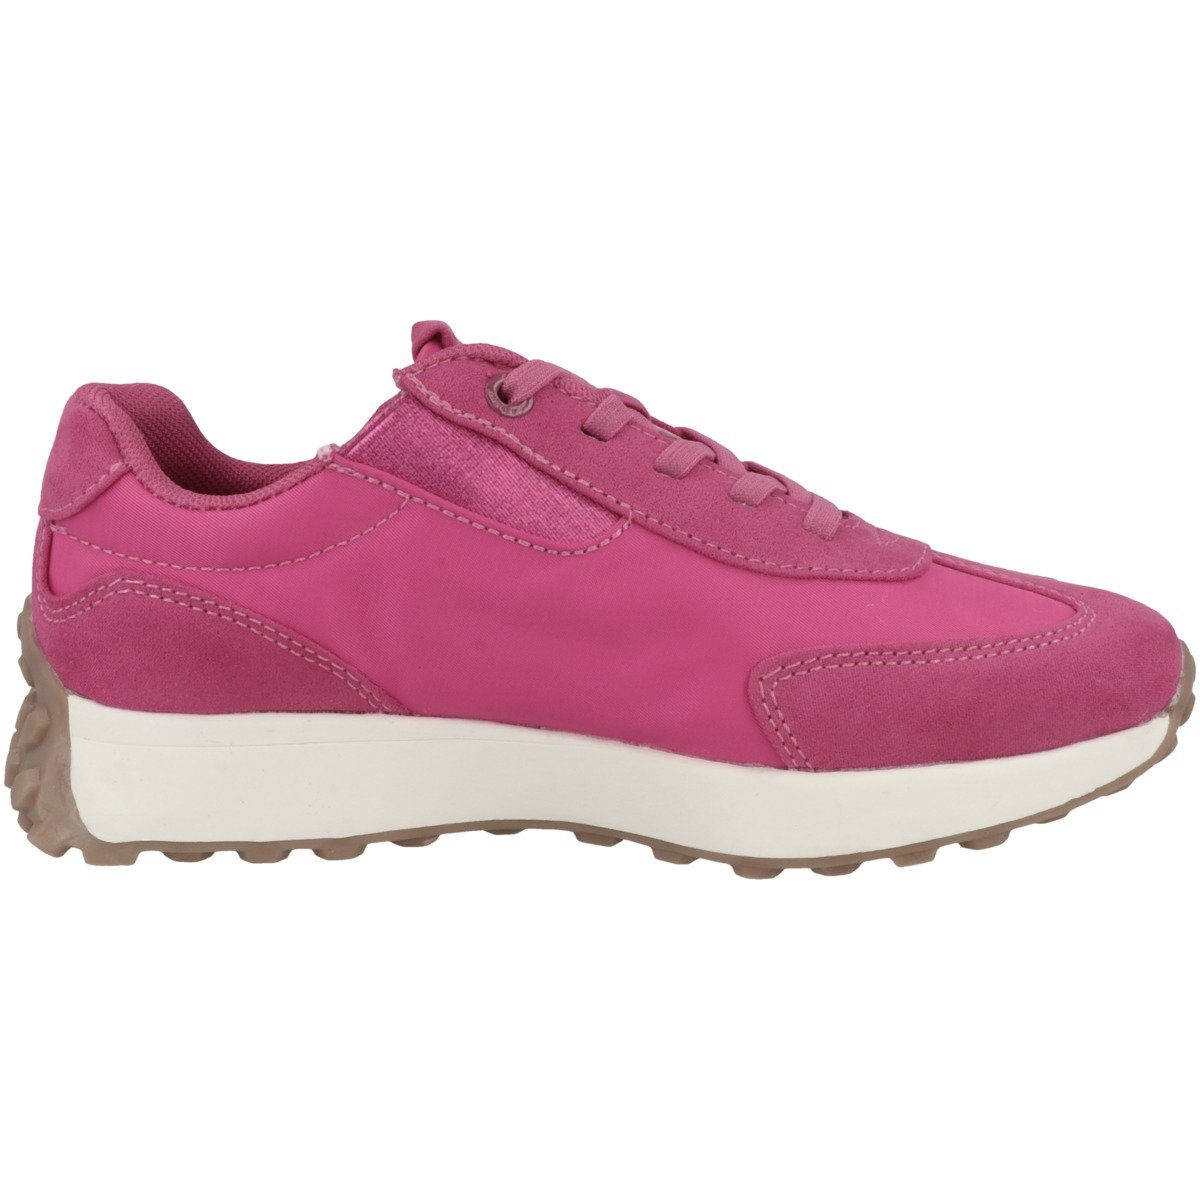 s.Oliver 5-43208-30 Mädchen pink Sneaker